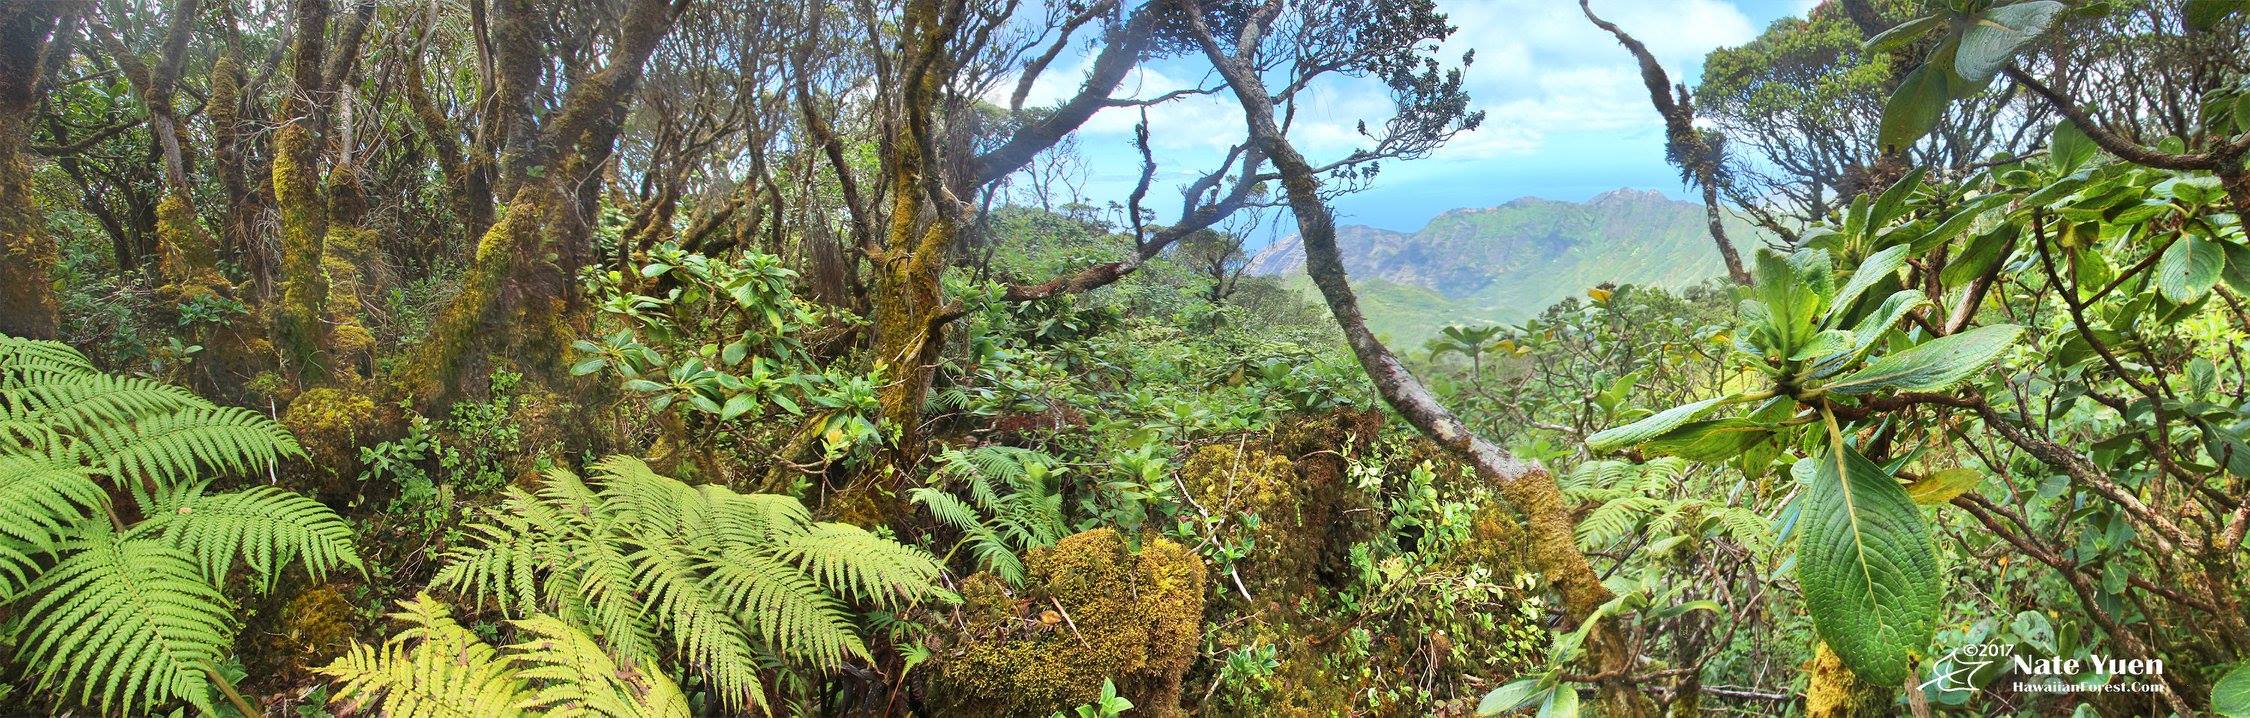 Hawaii Invasive Species Council | 2022 Hawaiʻi Invasive Species Awareness  Month